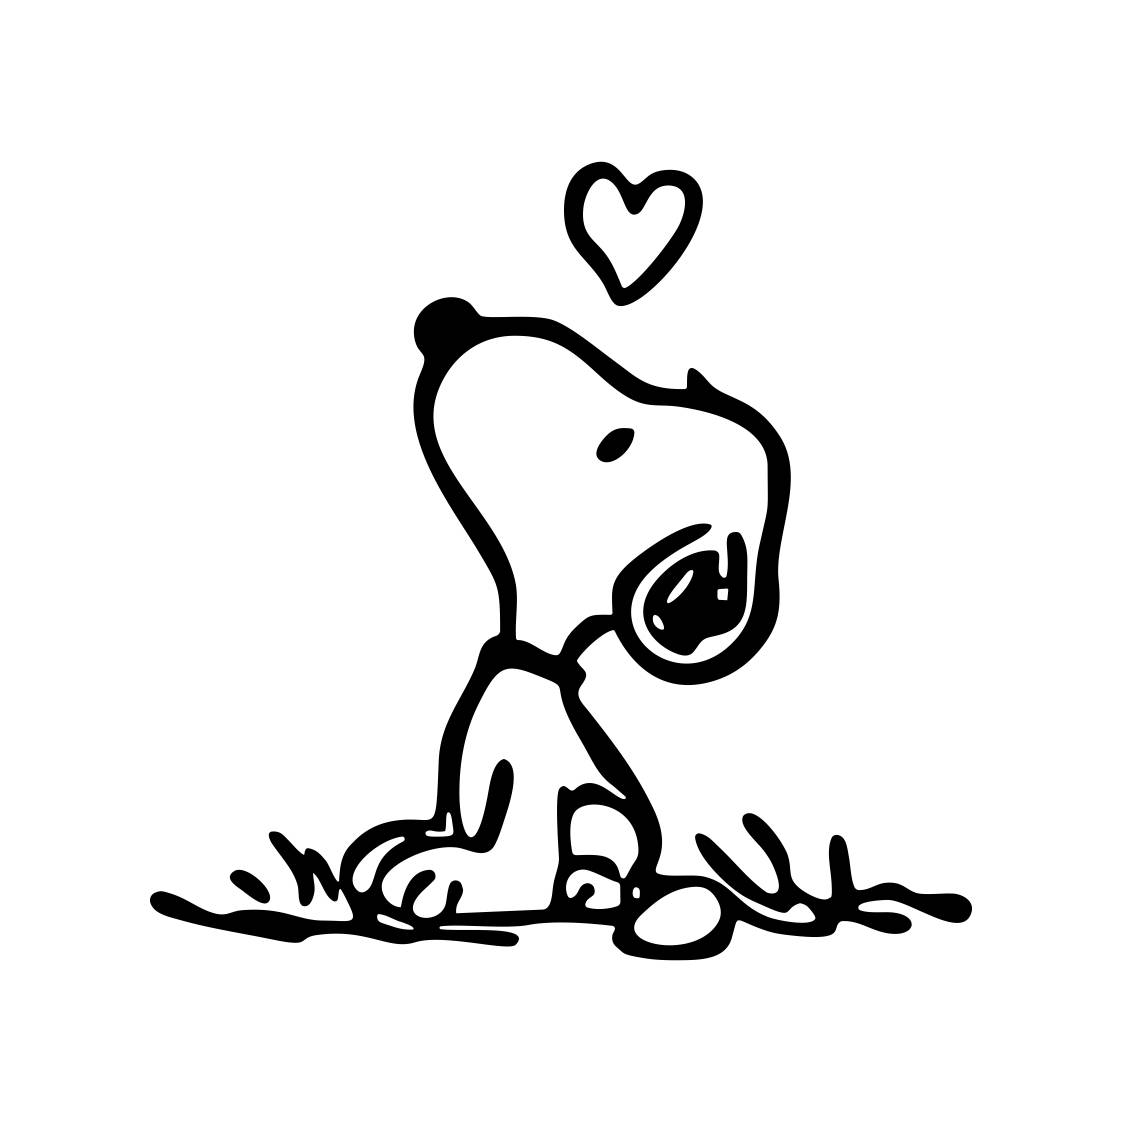 Download Descarga inmediata de Snoopy amor gráficos SVG Dxf EPS Png ...